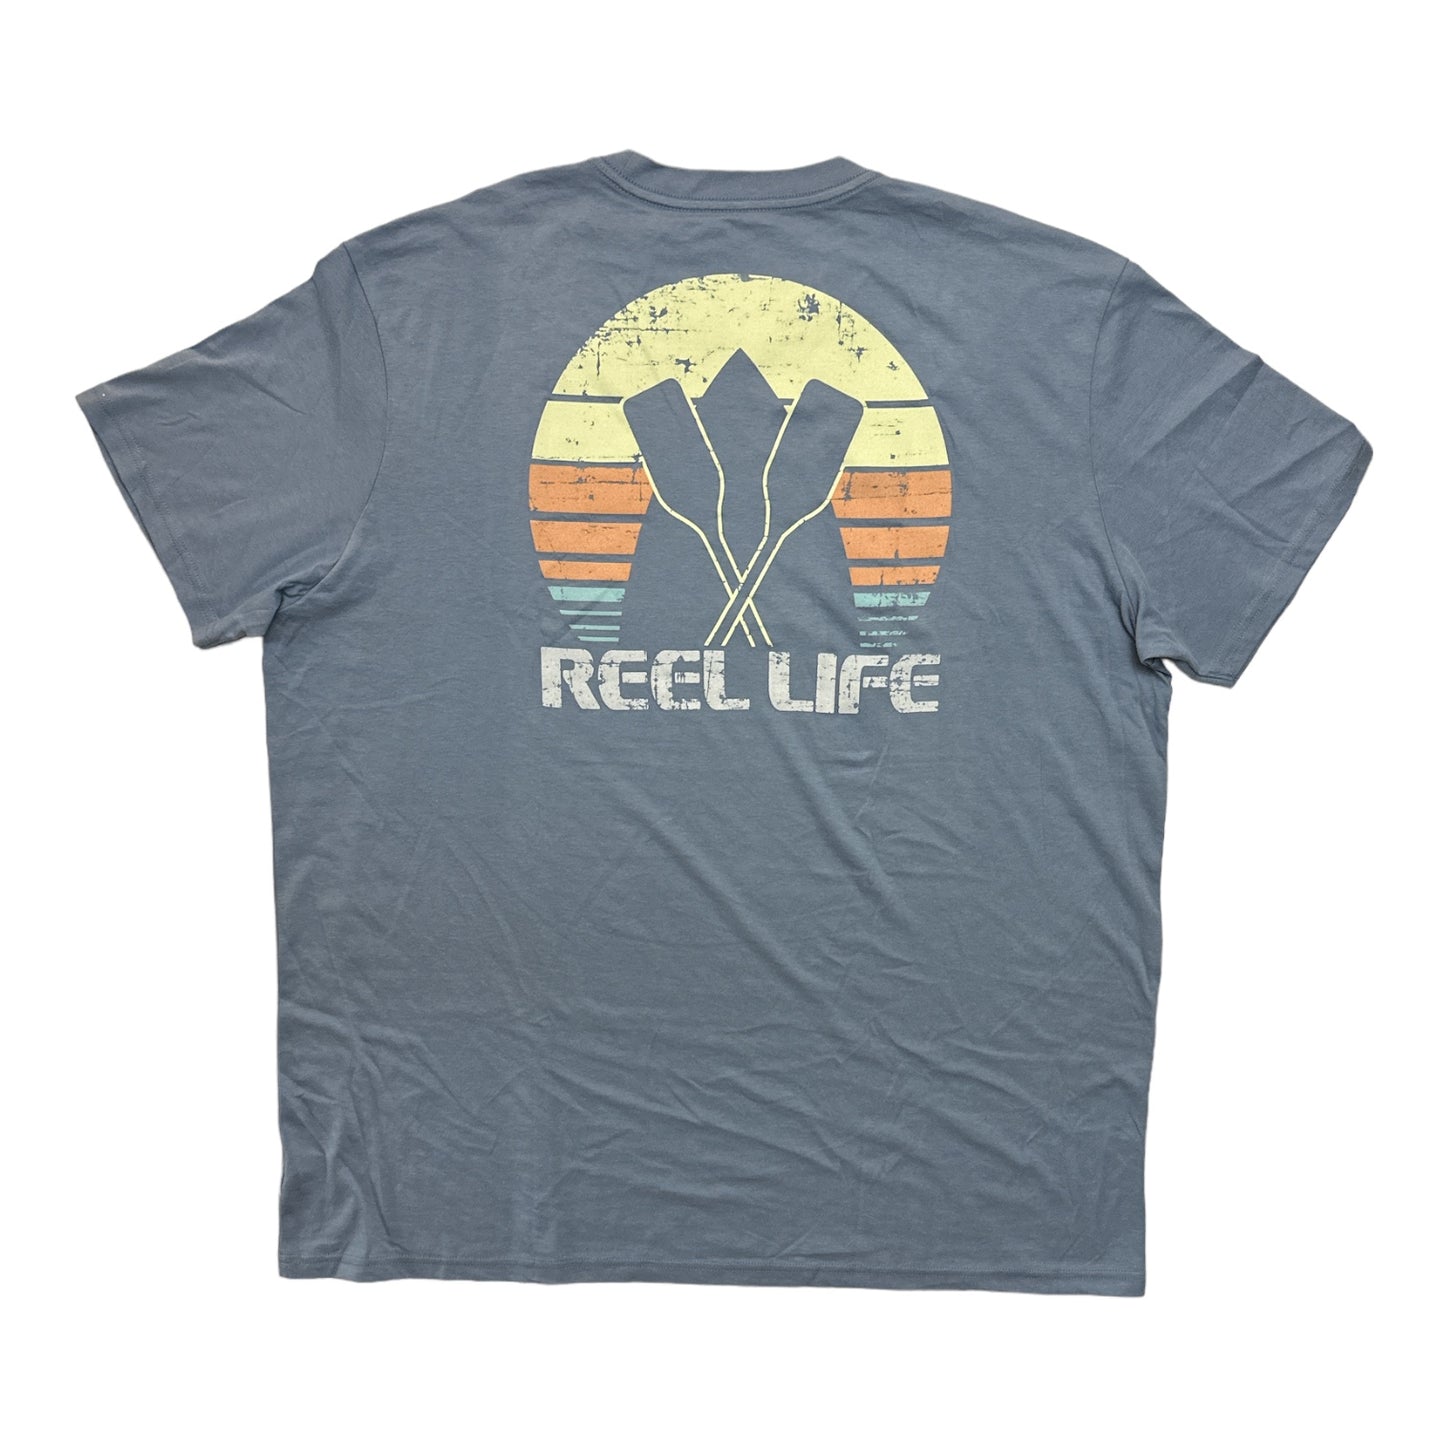 Reel Life Men's Neptune Ocean Washed Short Sleeve Crewneck Graphic Tee